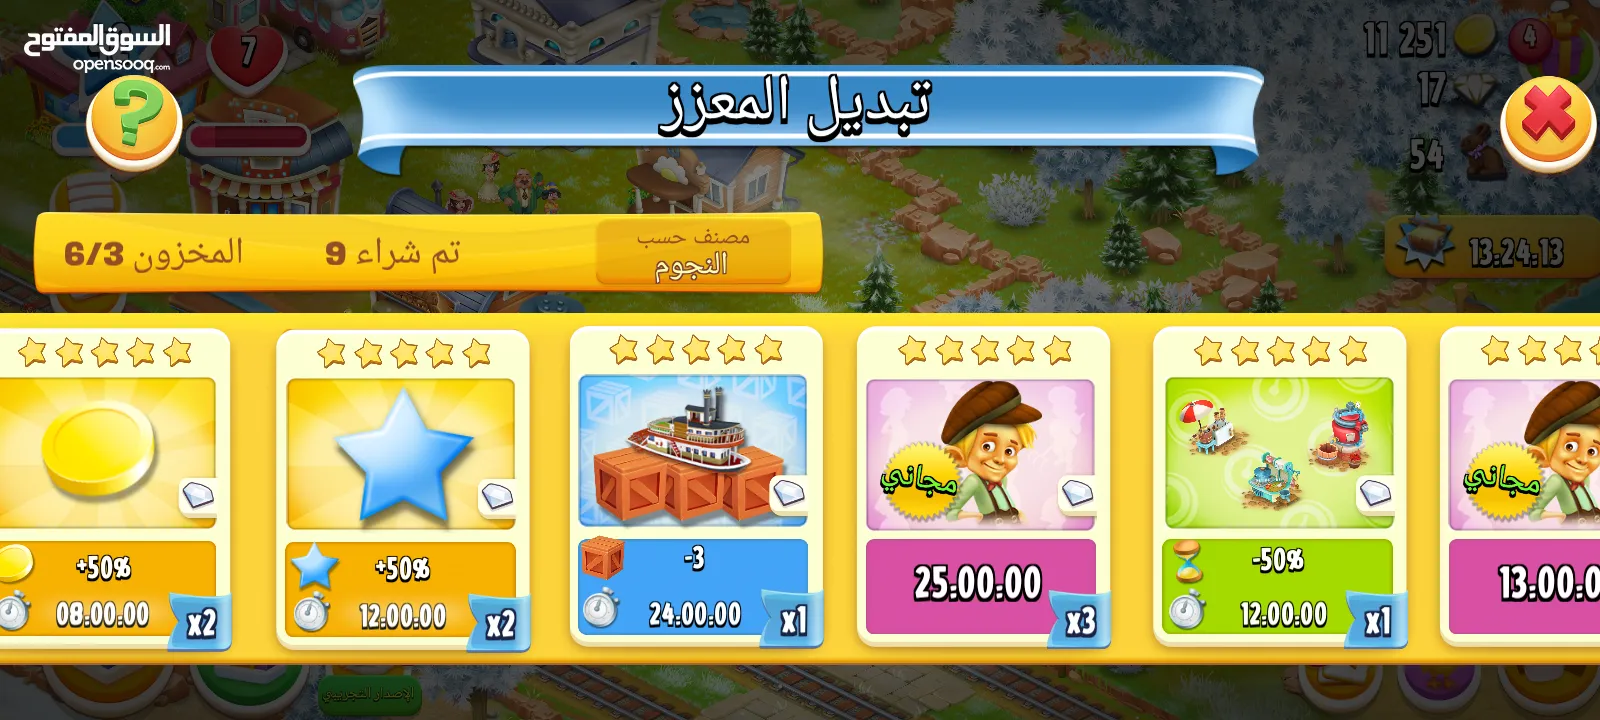 حساب hay day level 43 للبيع في لبنان